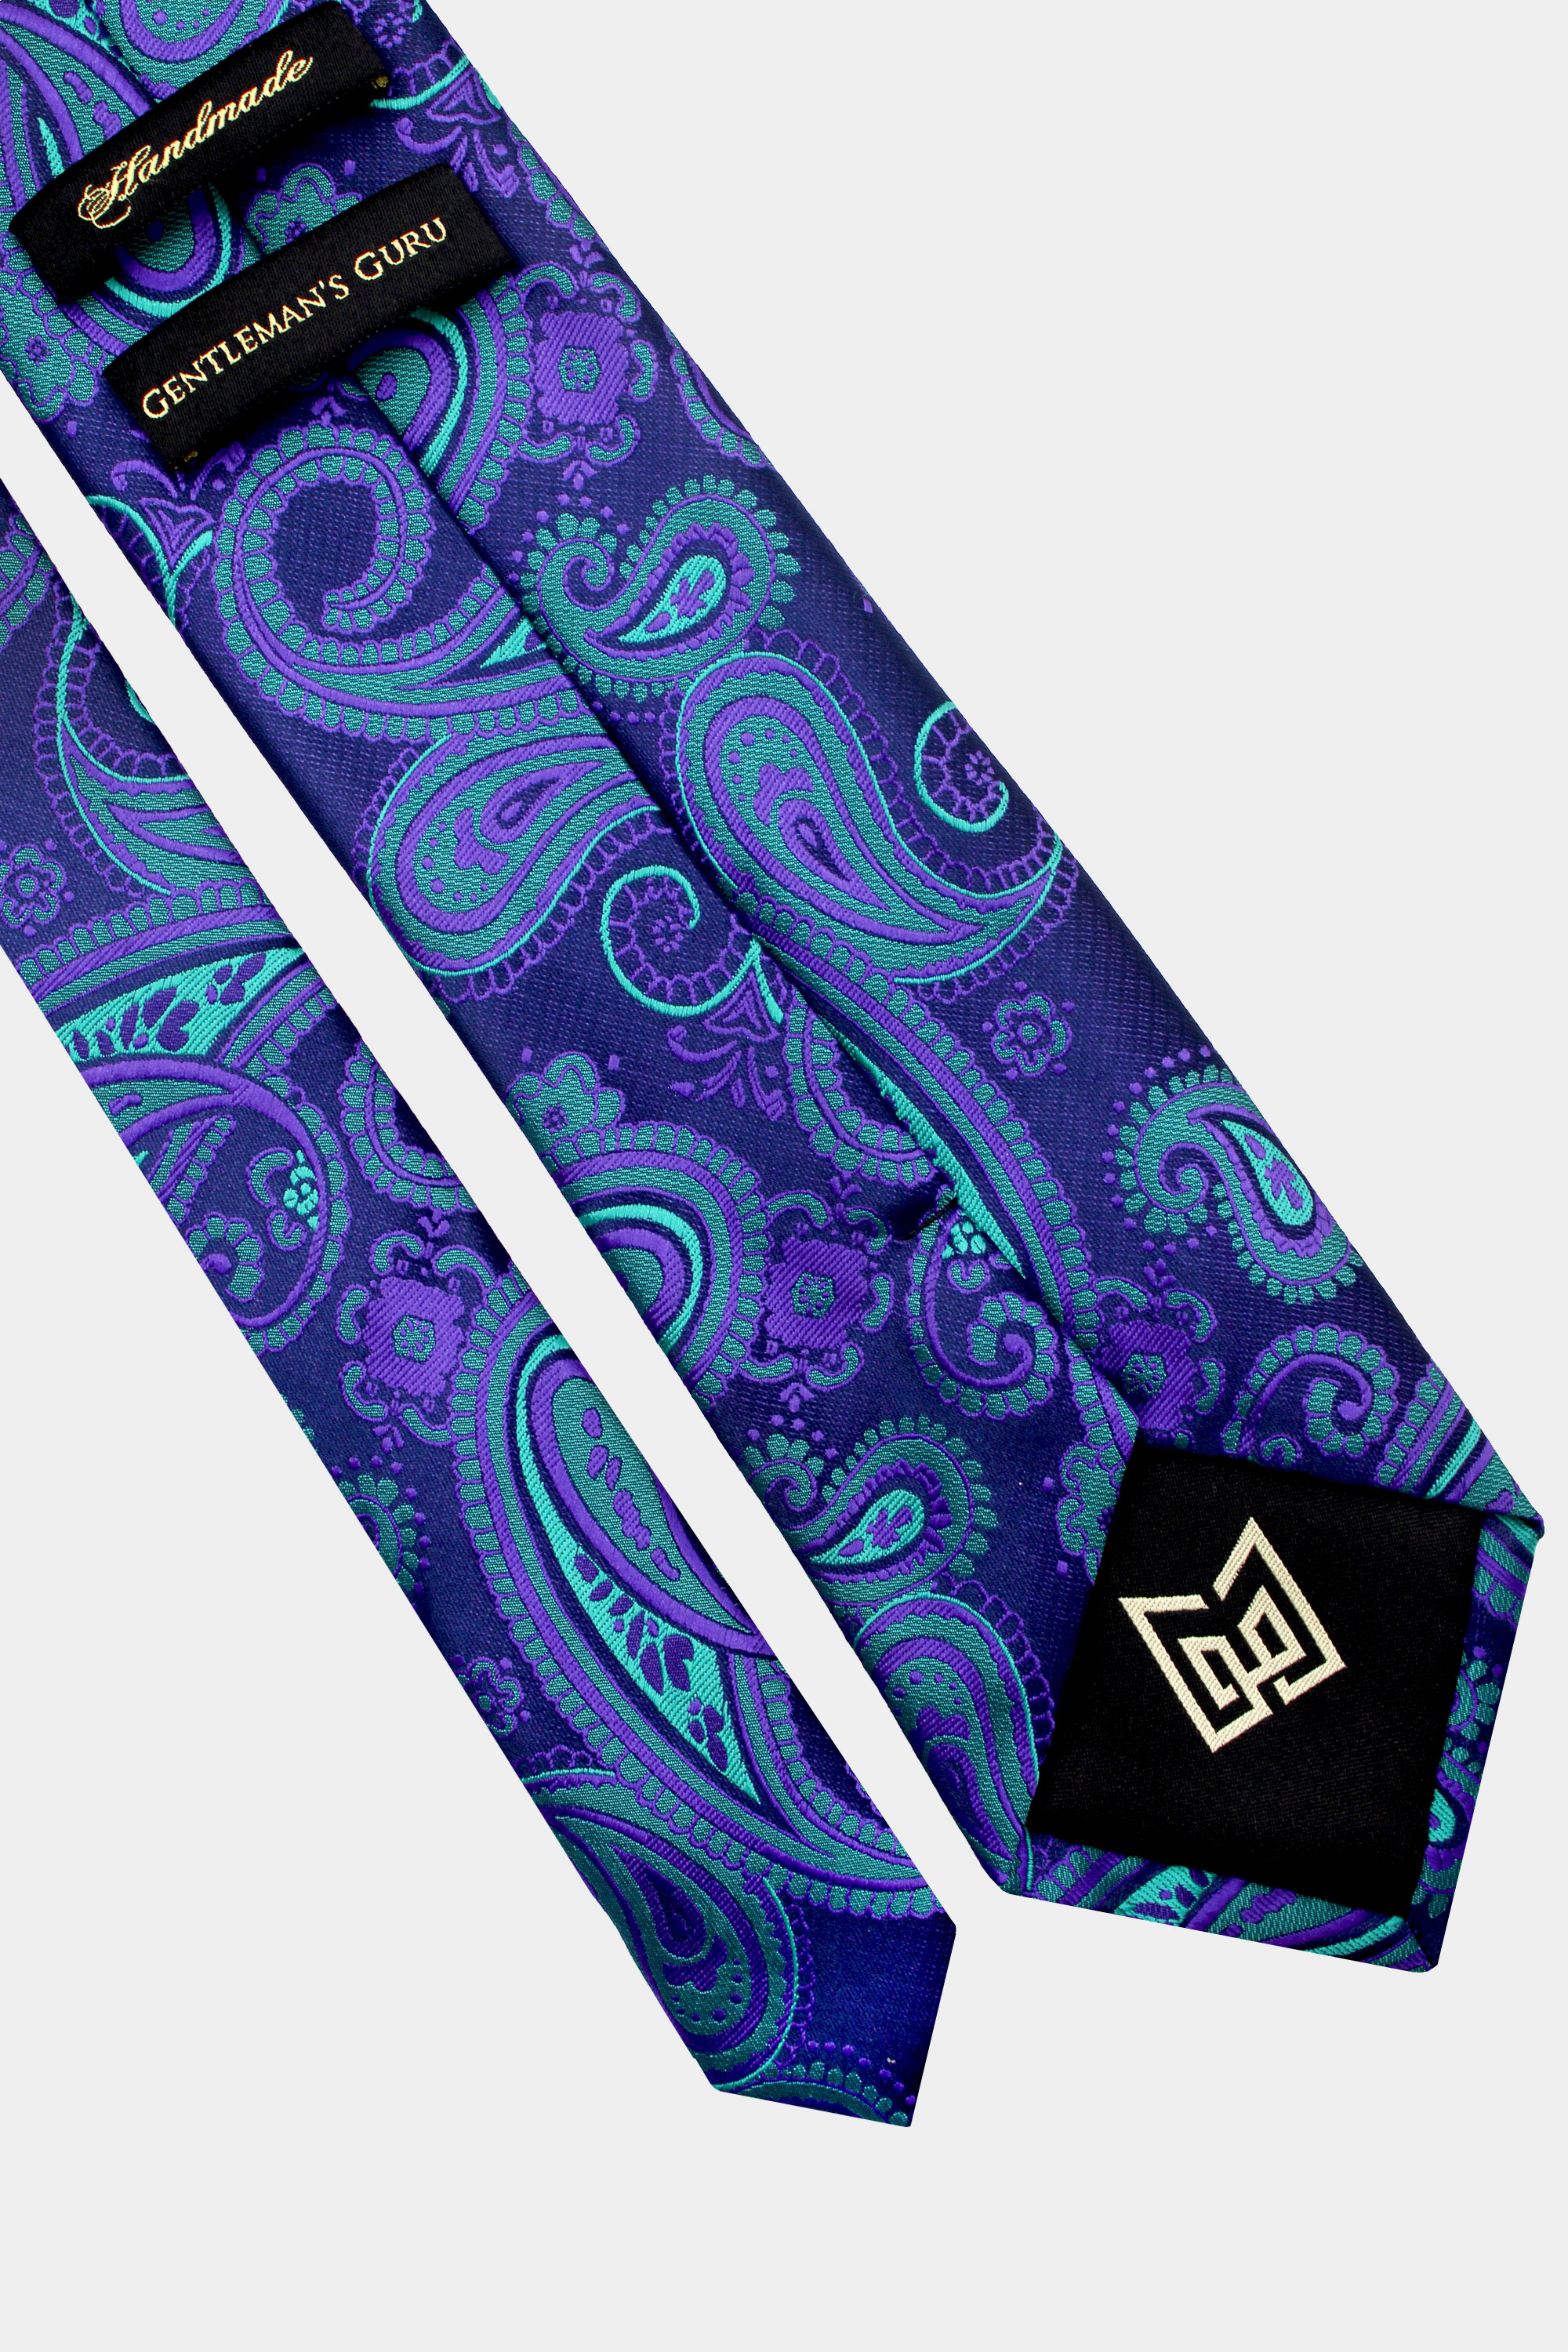 Purple-and-Turquoise-Tie-from-Gentlemansguru.com